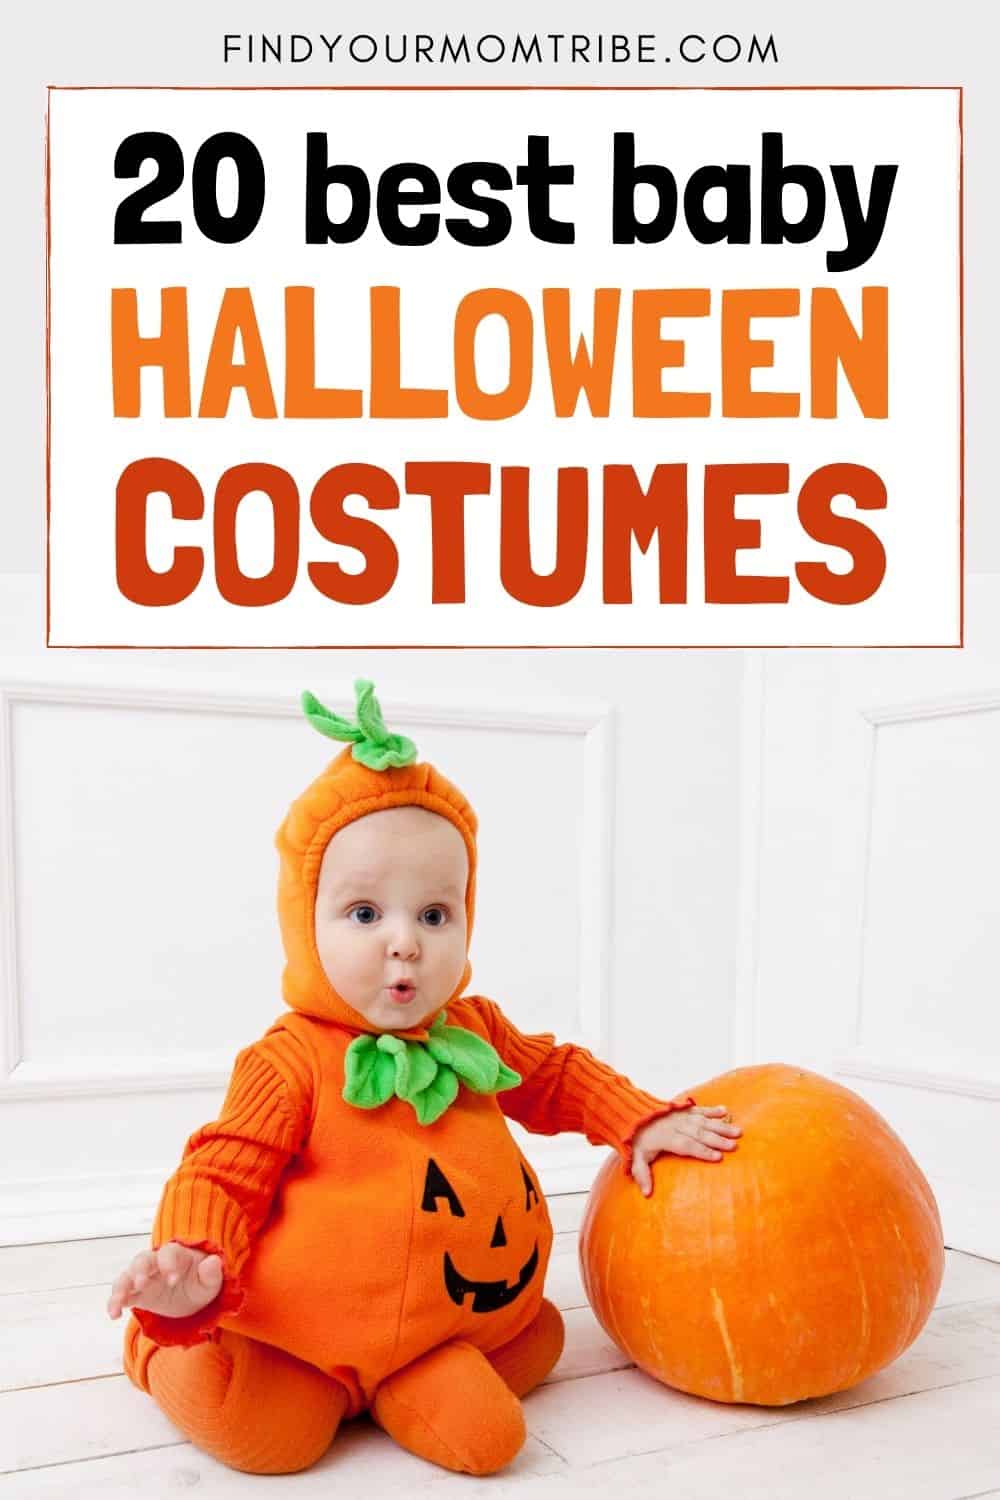 20 Best Baby Halloween Costumes Pinterest